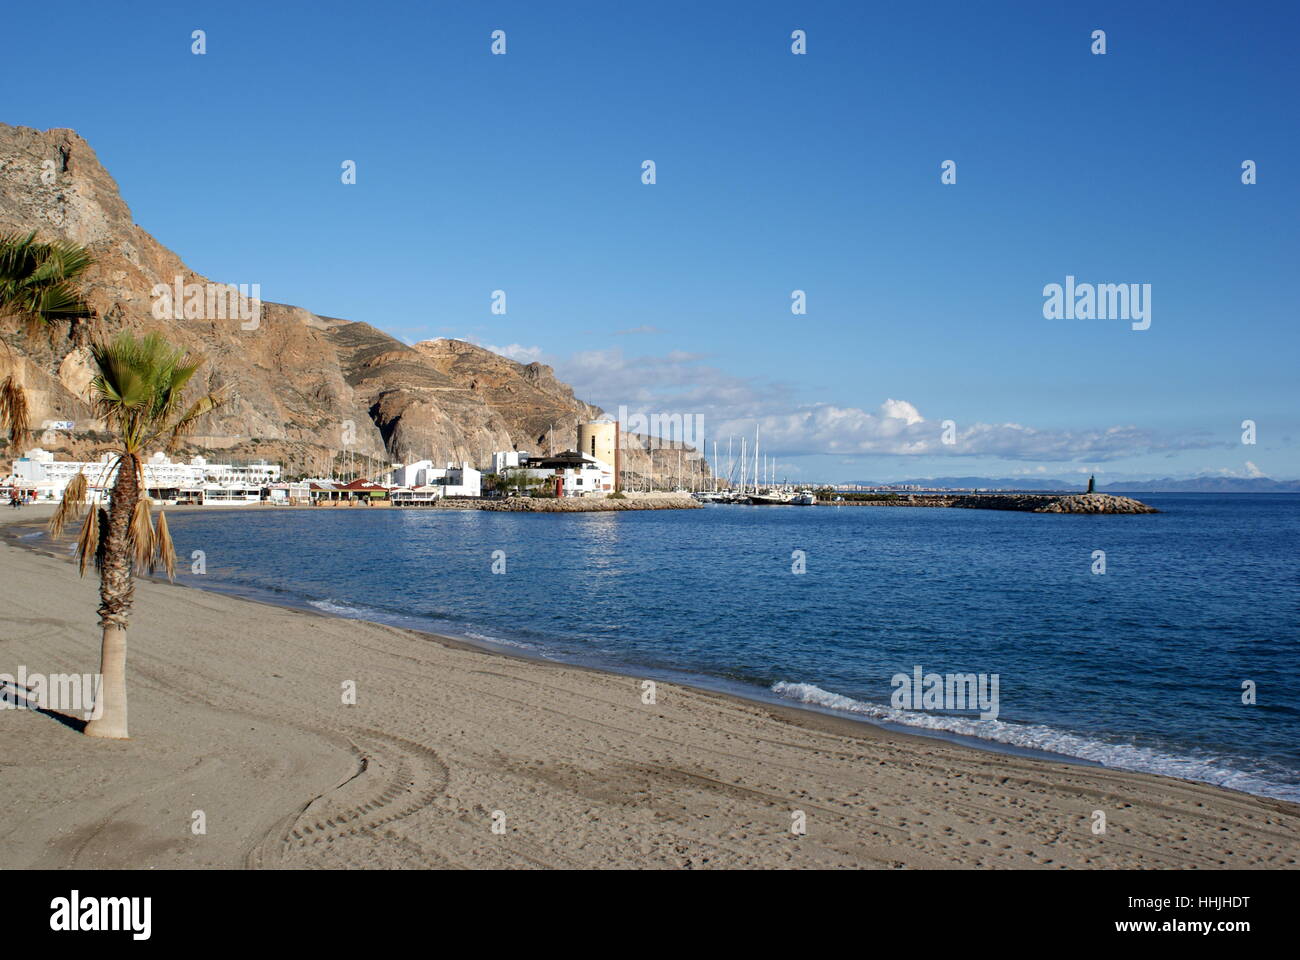 Aguadulce beach and marina, Almeria province, Andalucia, Spain Stock Photo